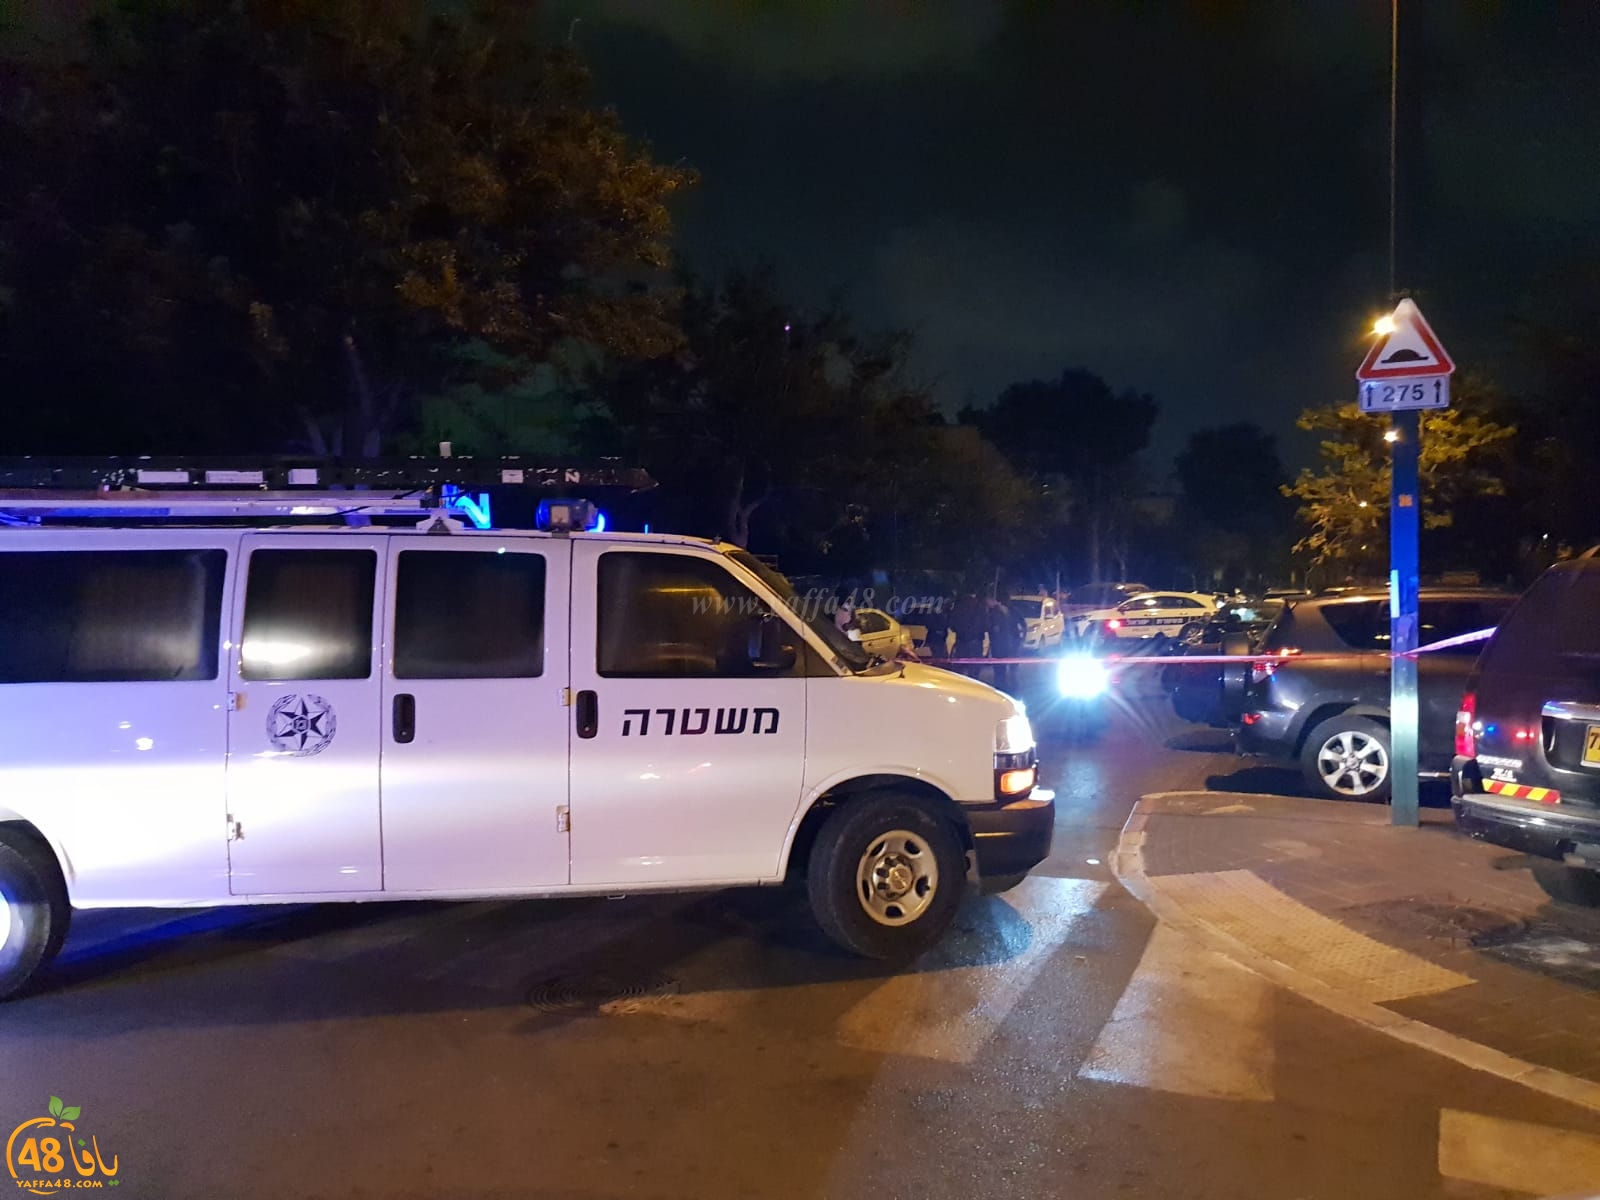  يافا: الشرطة تُغلق شارعي تسيهتلي ونخمان مبرسلف بعد اطلاق نار